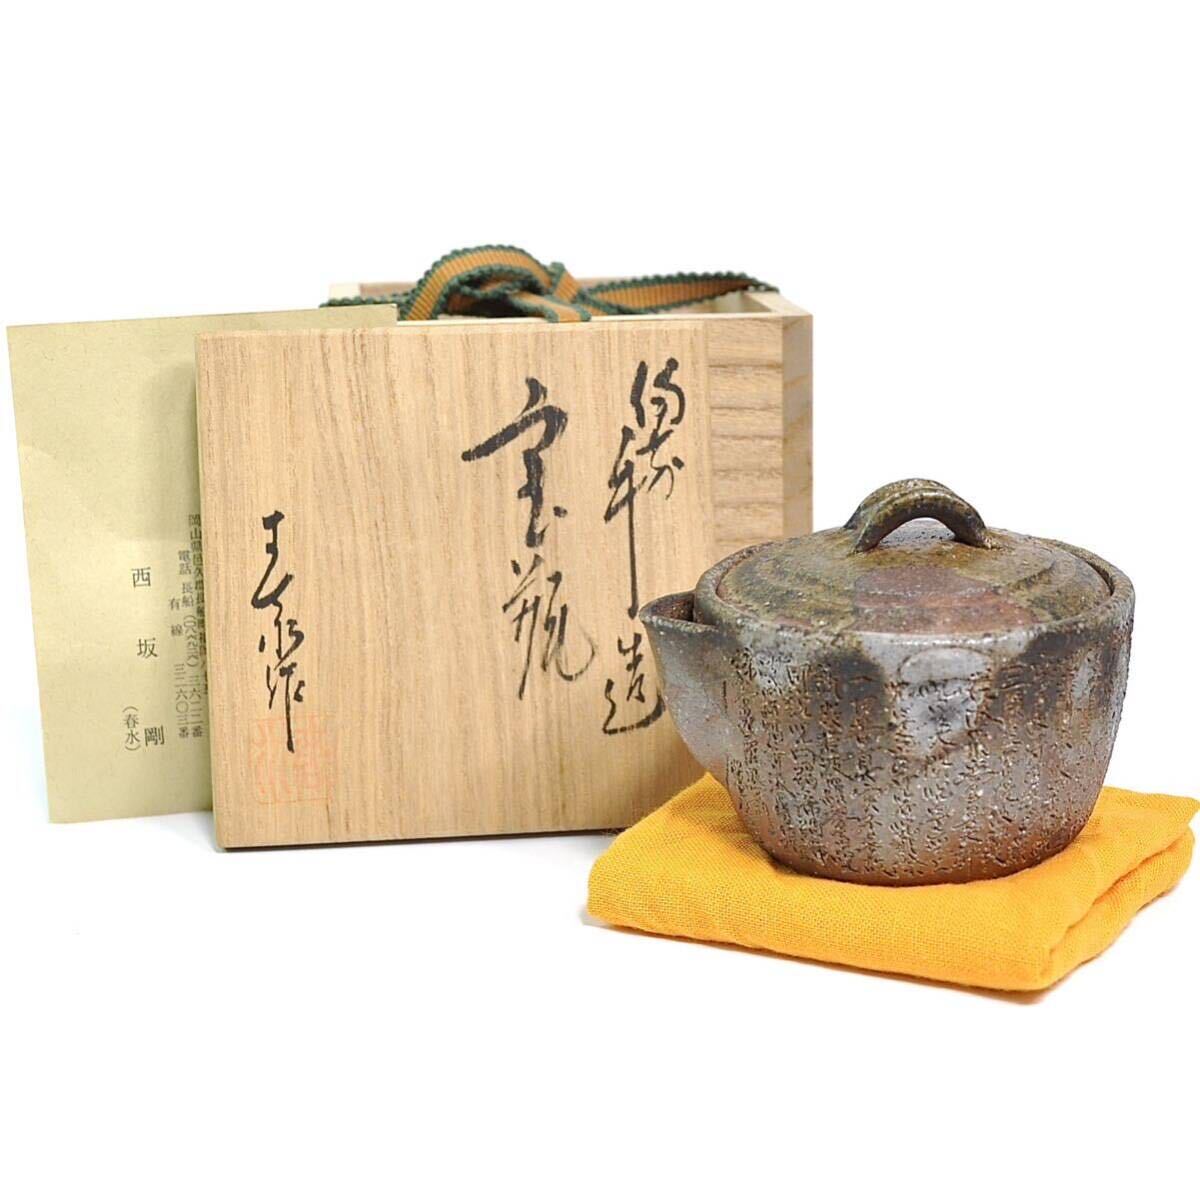 備前 西坂春水 宝瓶 手造 般若心経彫 茶器 煎茶道具の画像1